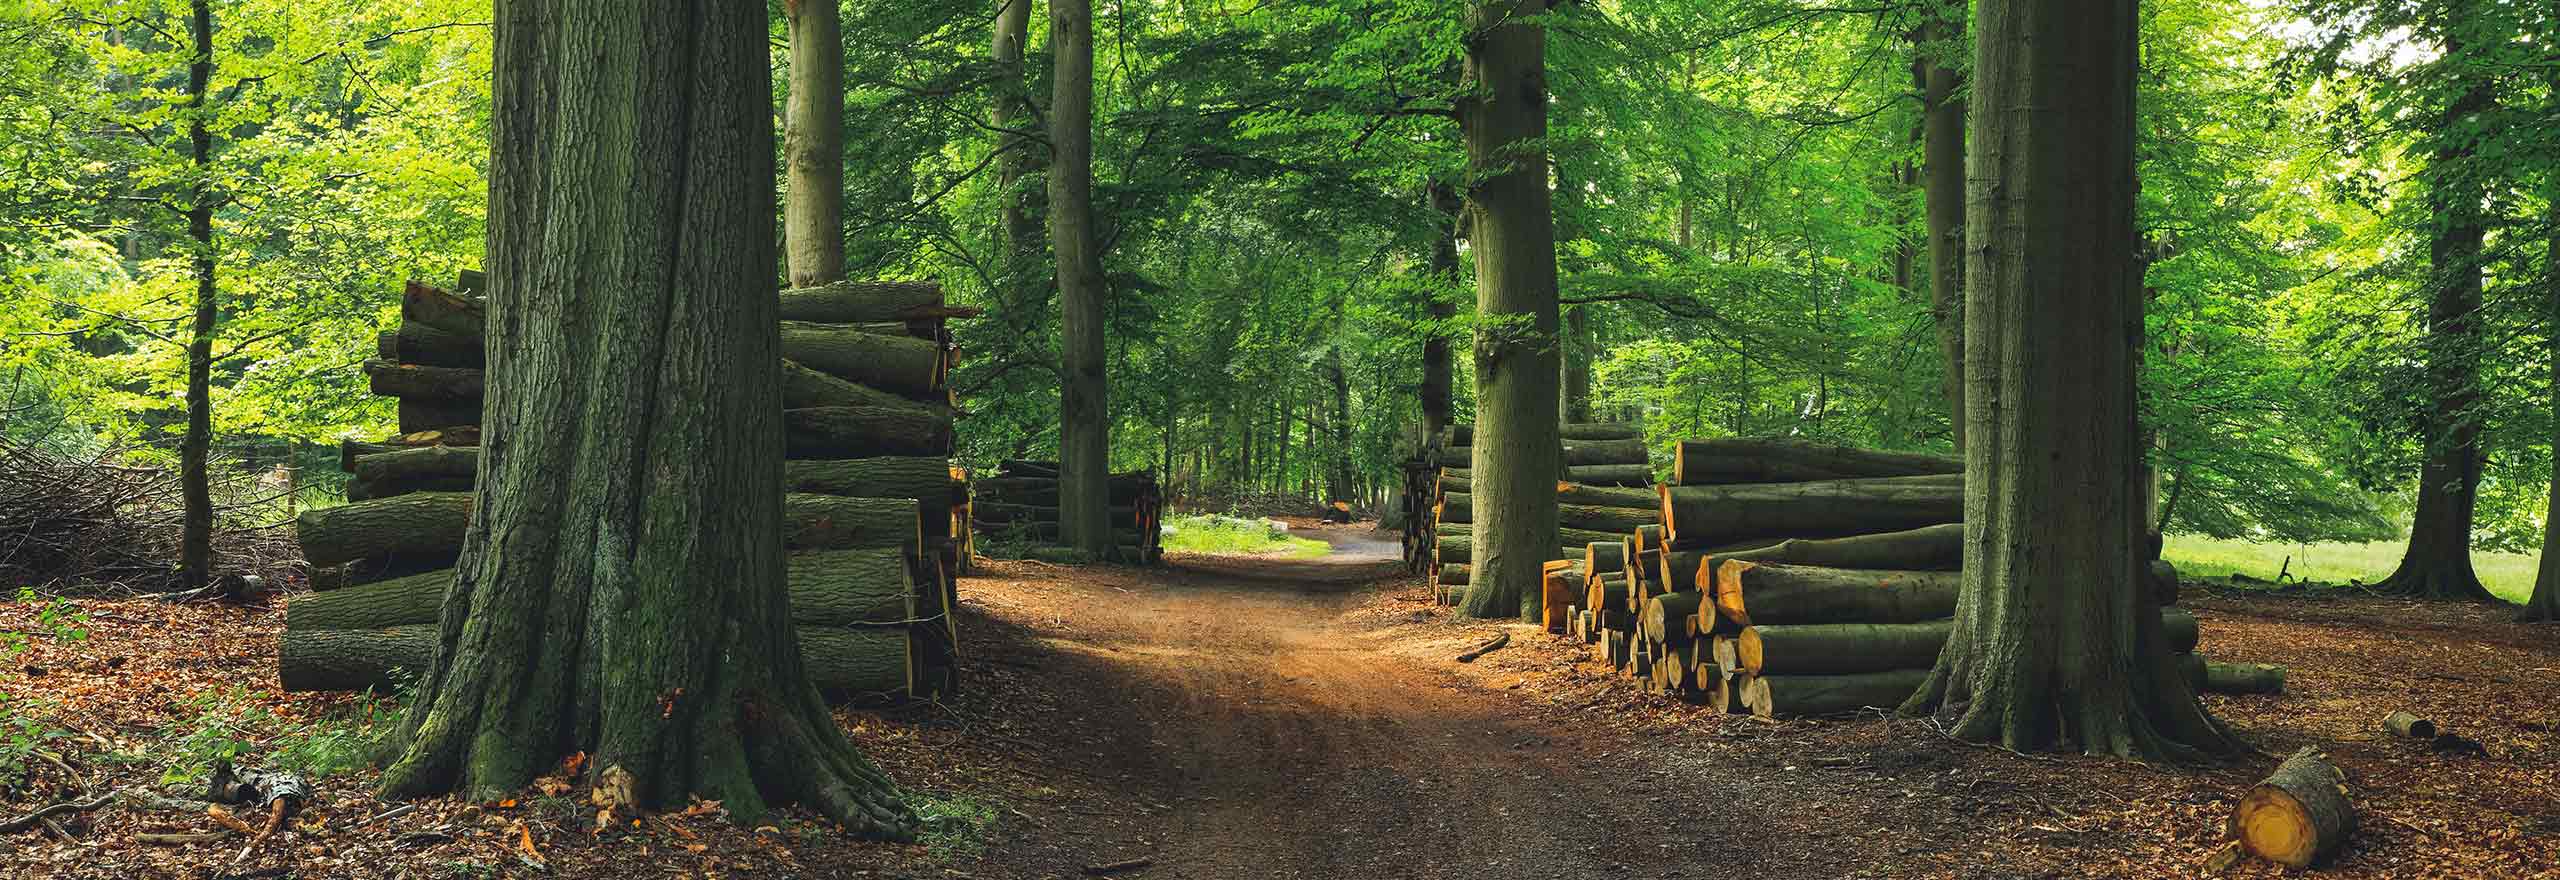 Foresta verde con alberi tagliati e cataste di legname 